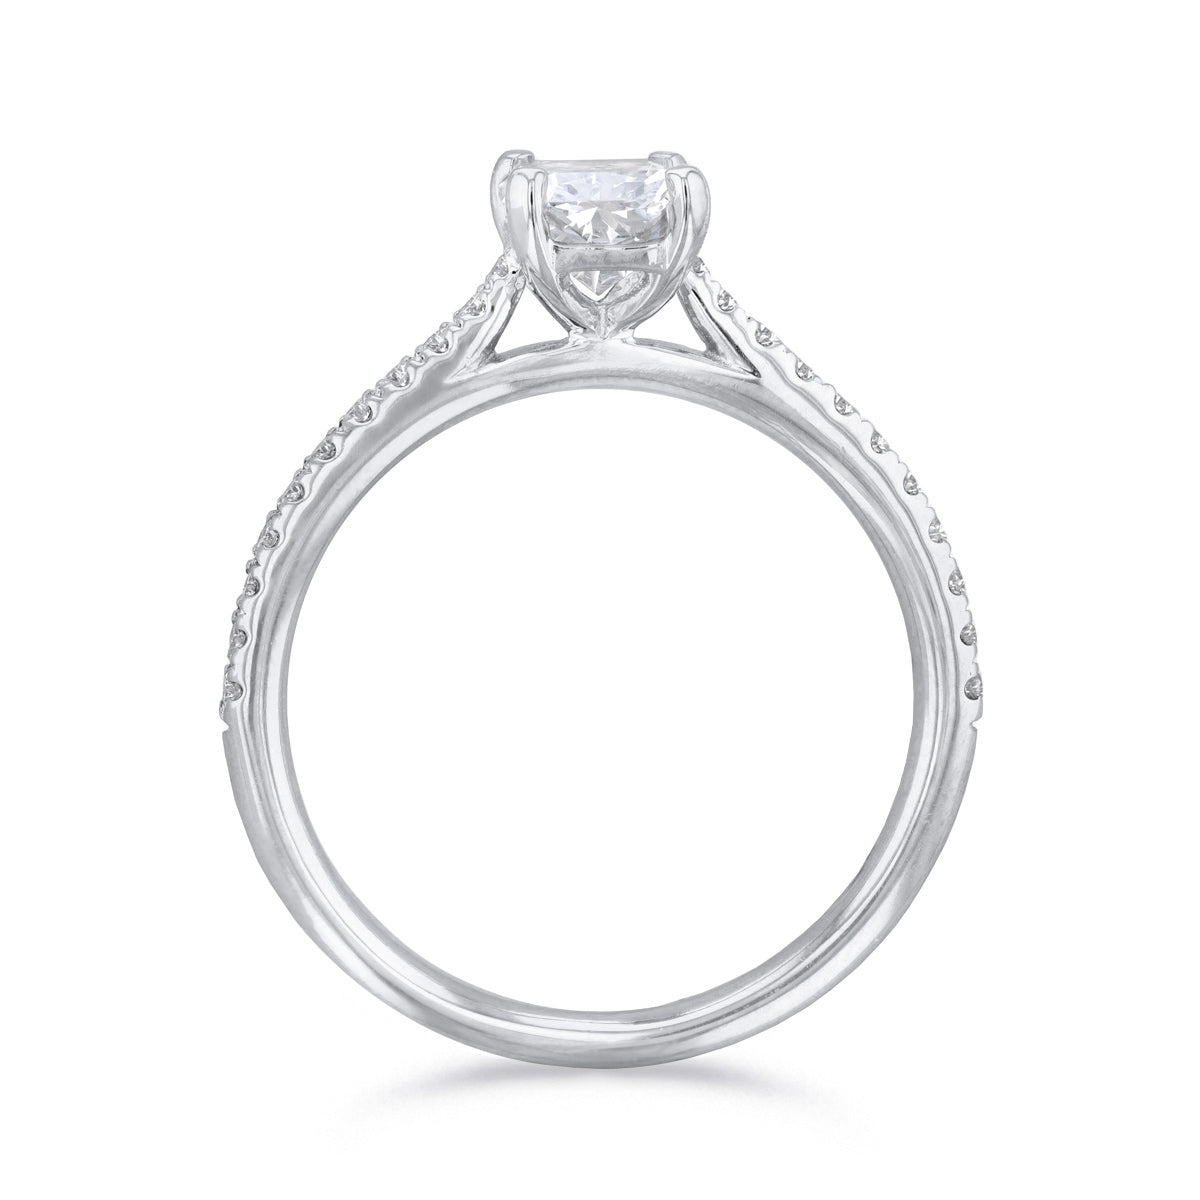 0-25ct-ophelia-shoulder-set-radiant-cut-solitaire-diamond-engagement-ring-platinum